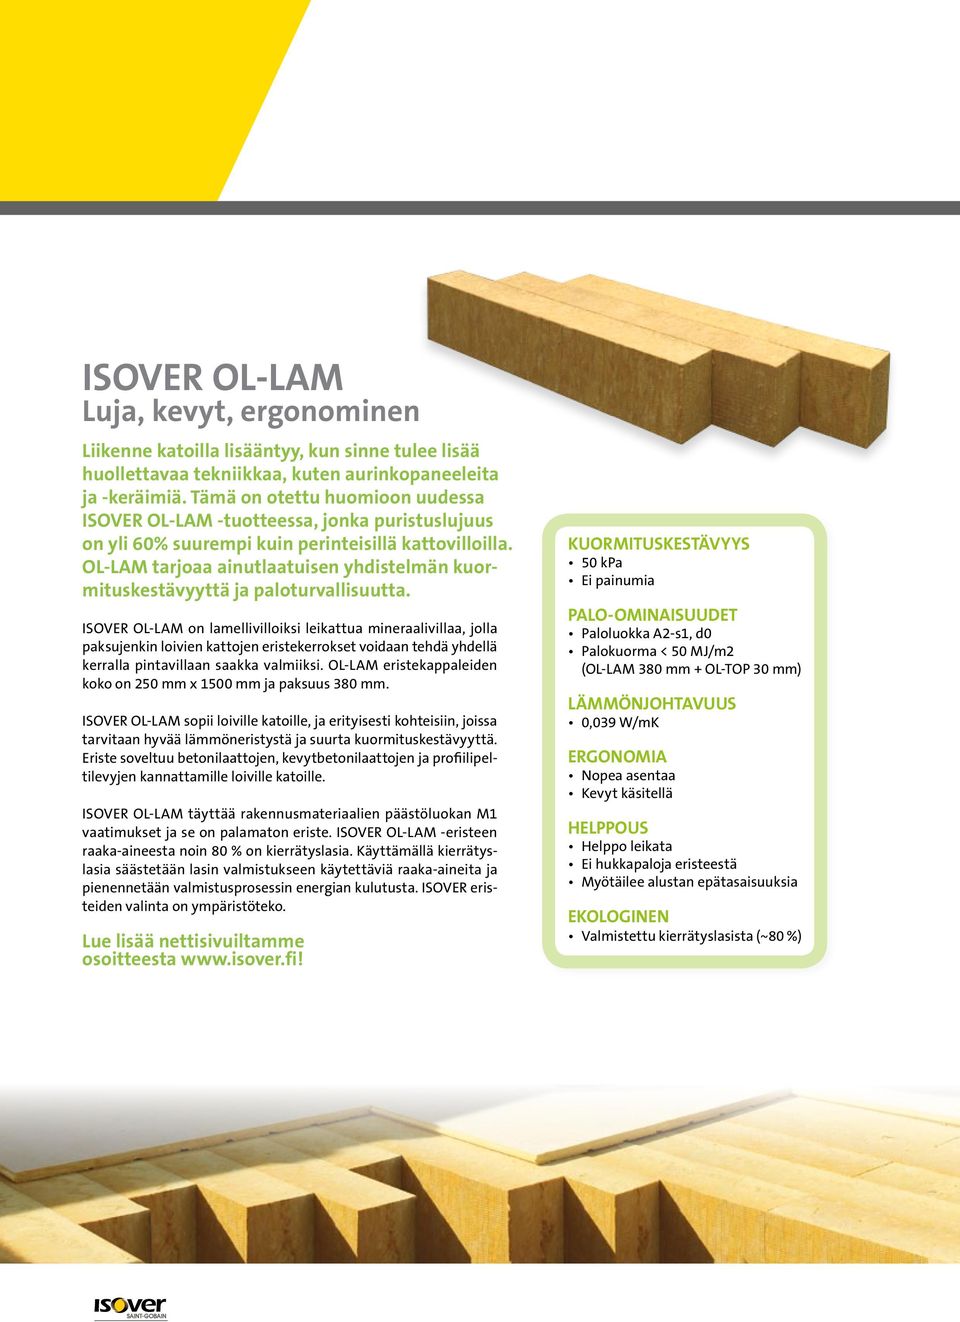 OL-LAM tarjoaa ainutlaatuisen yhdistelmän kuormituskestävyyttä ja paloturvallisuutta.